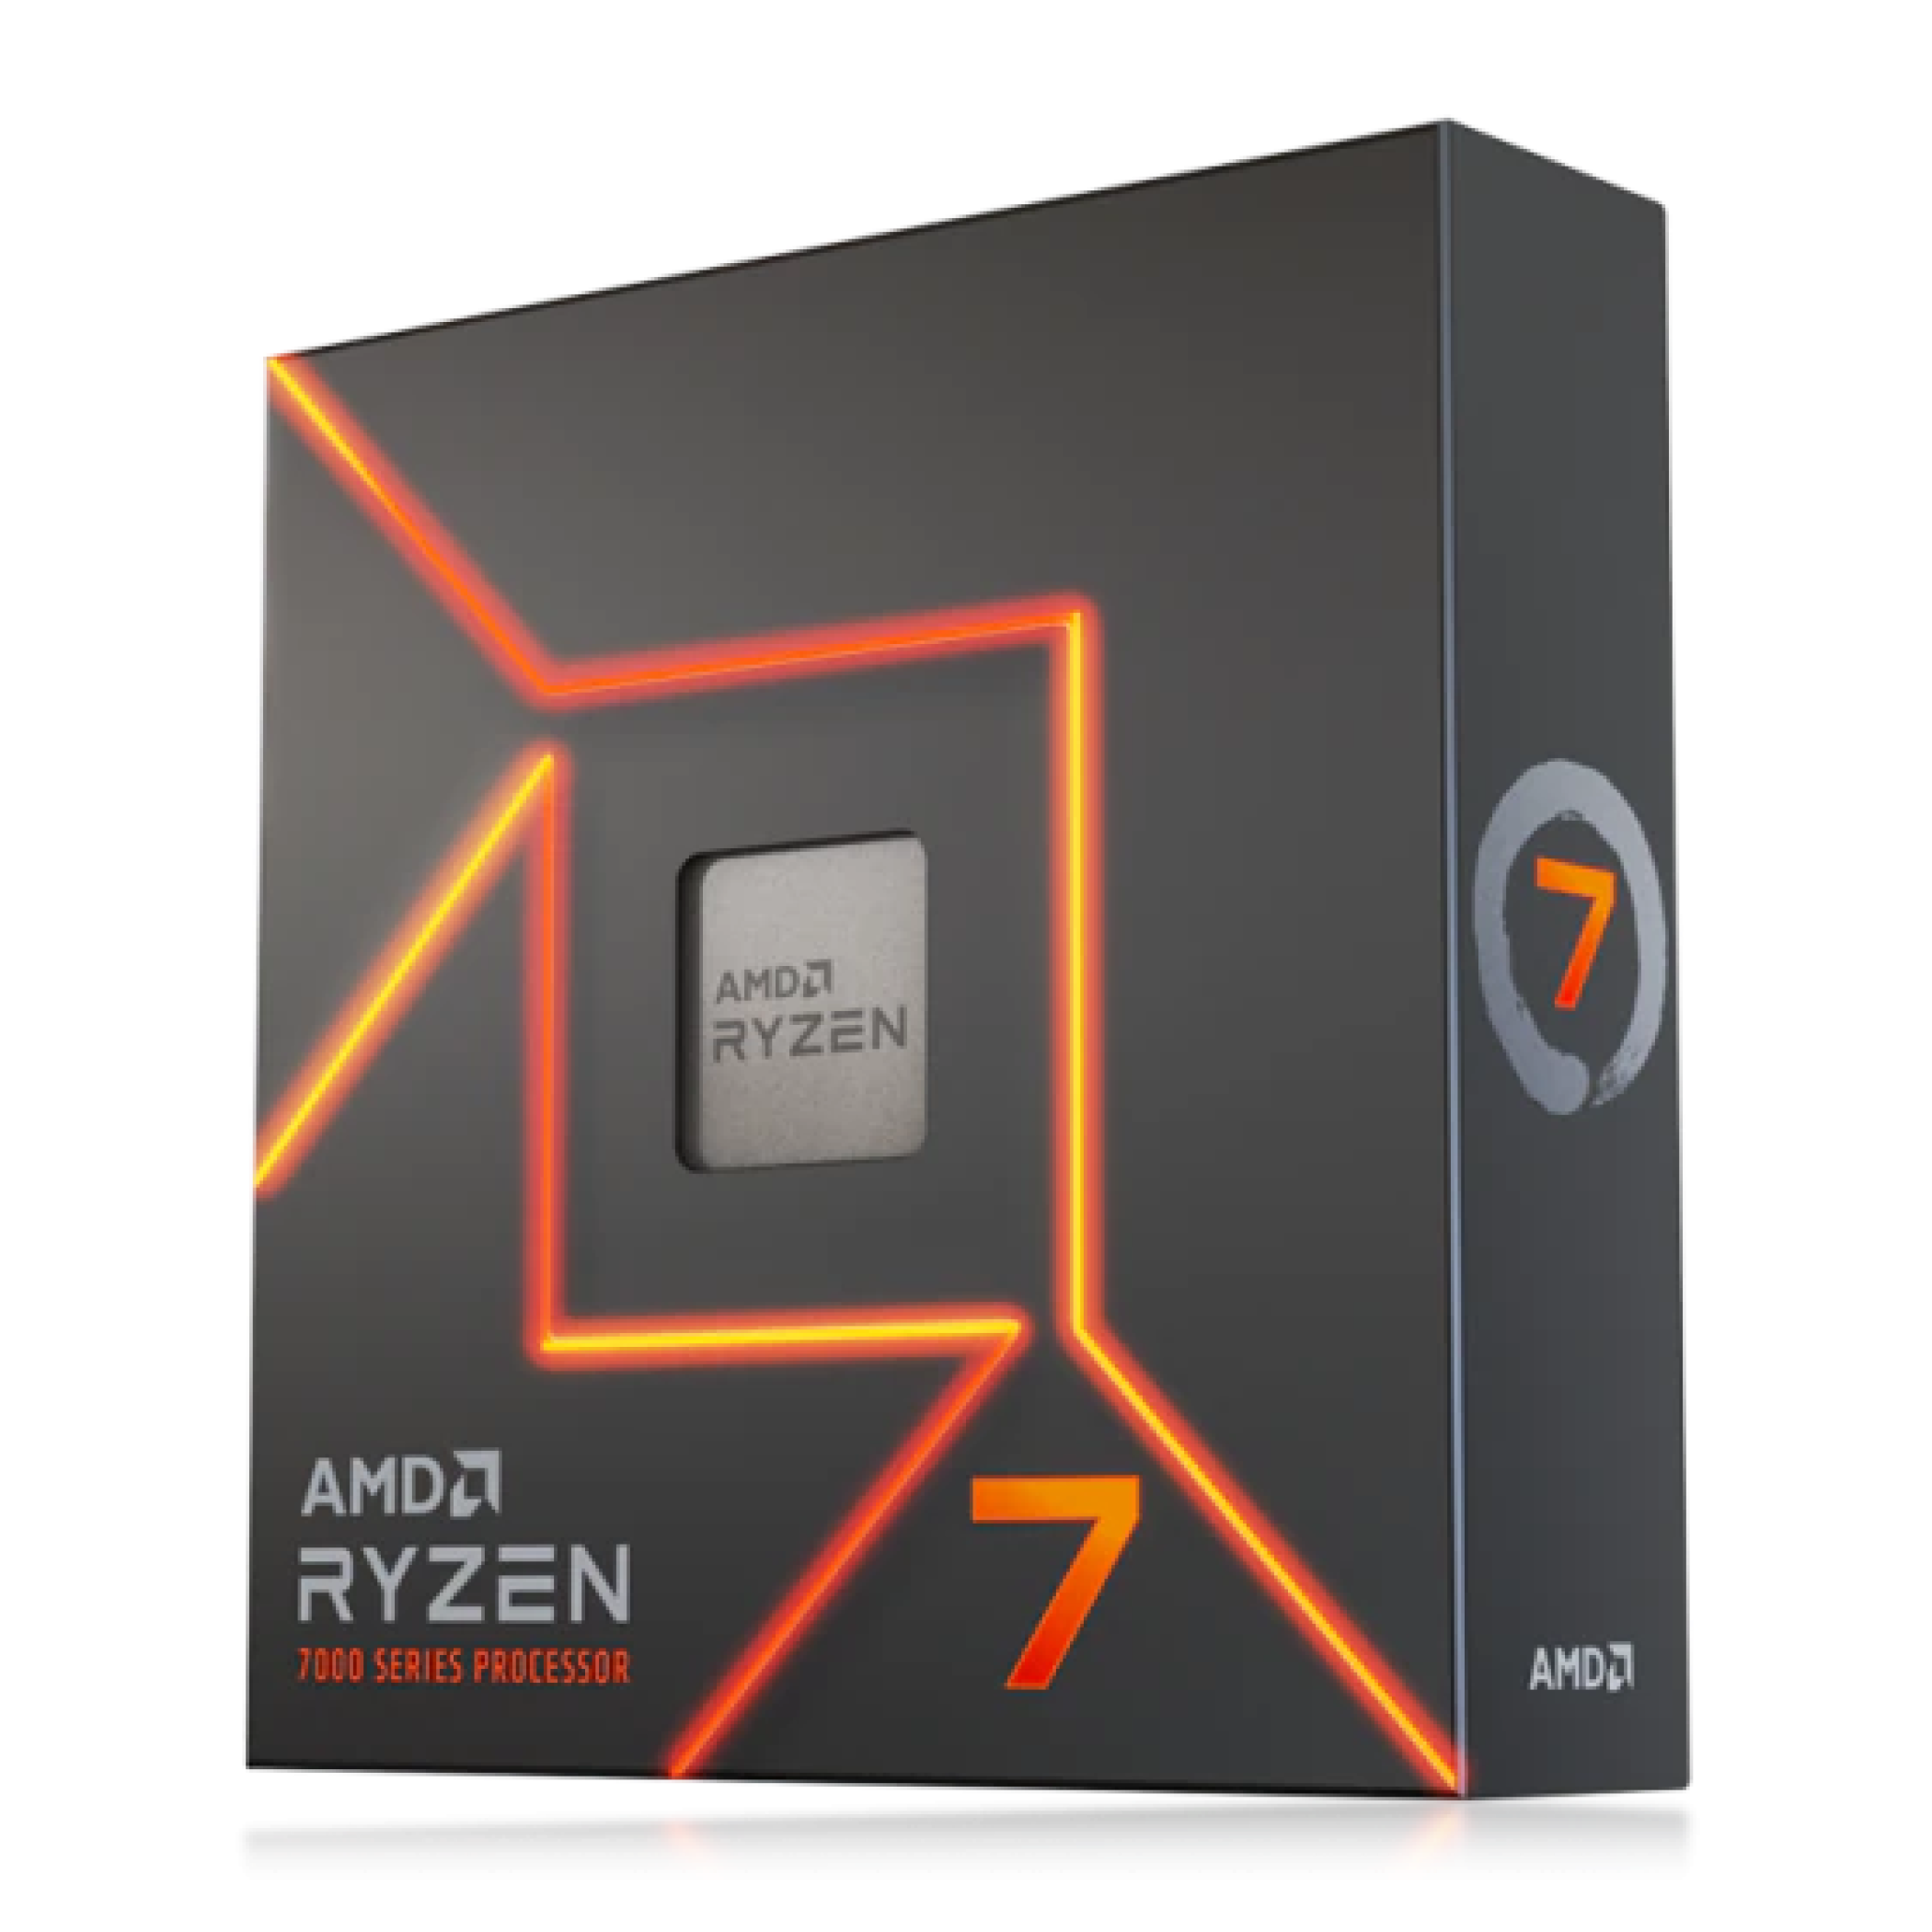 The AMD Ryzen 7 7700X CPU.